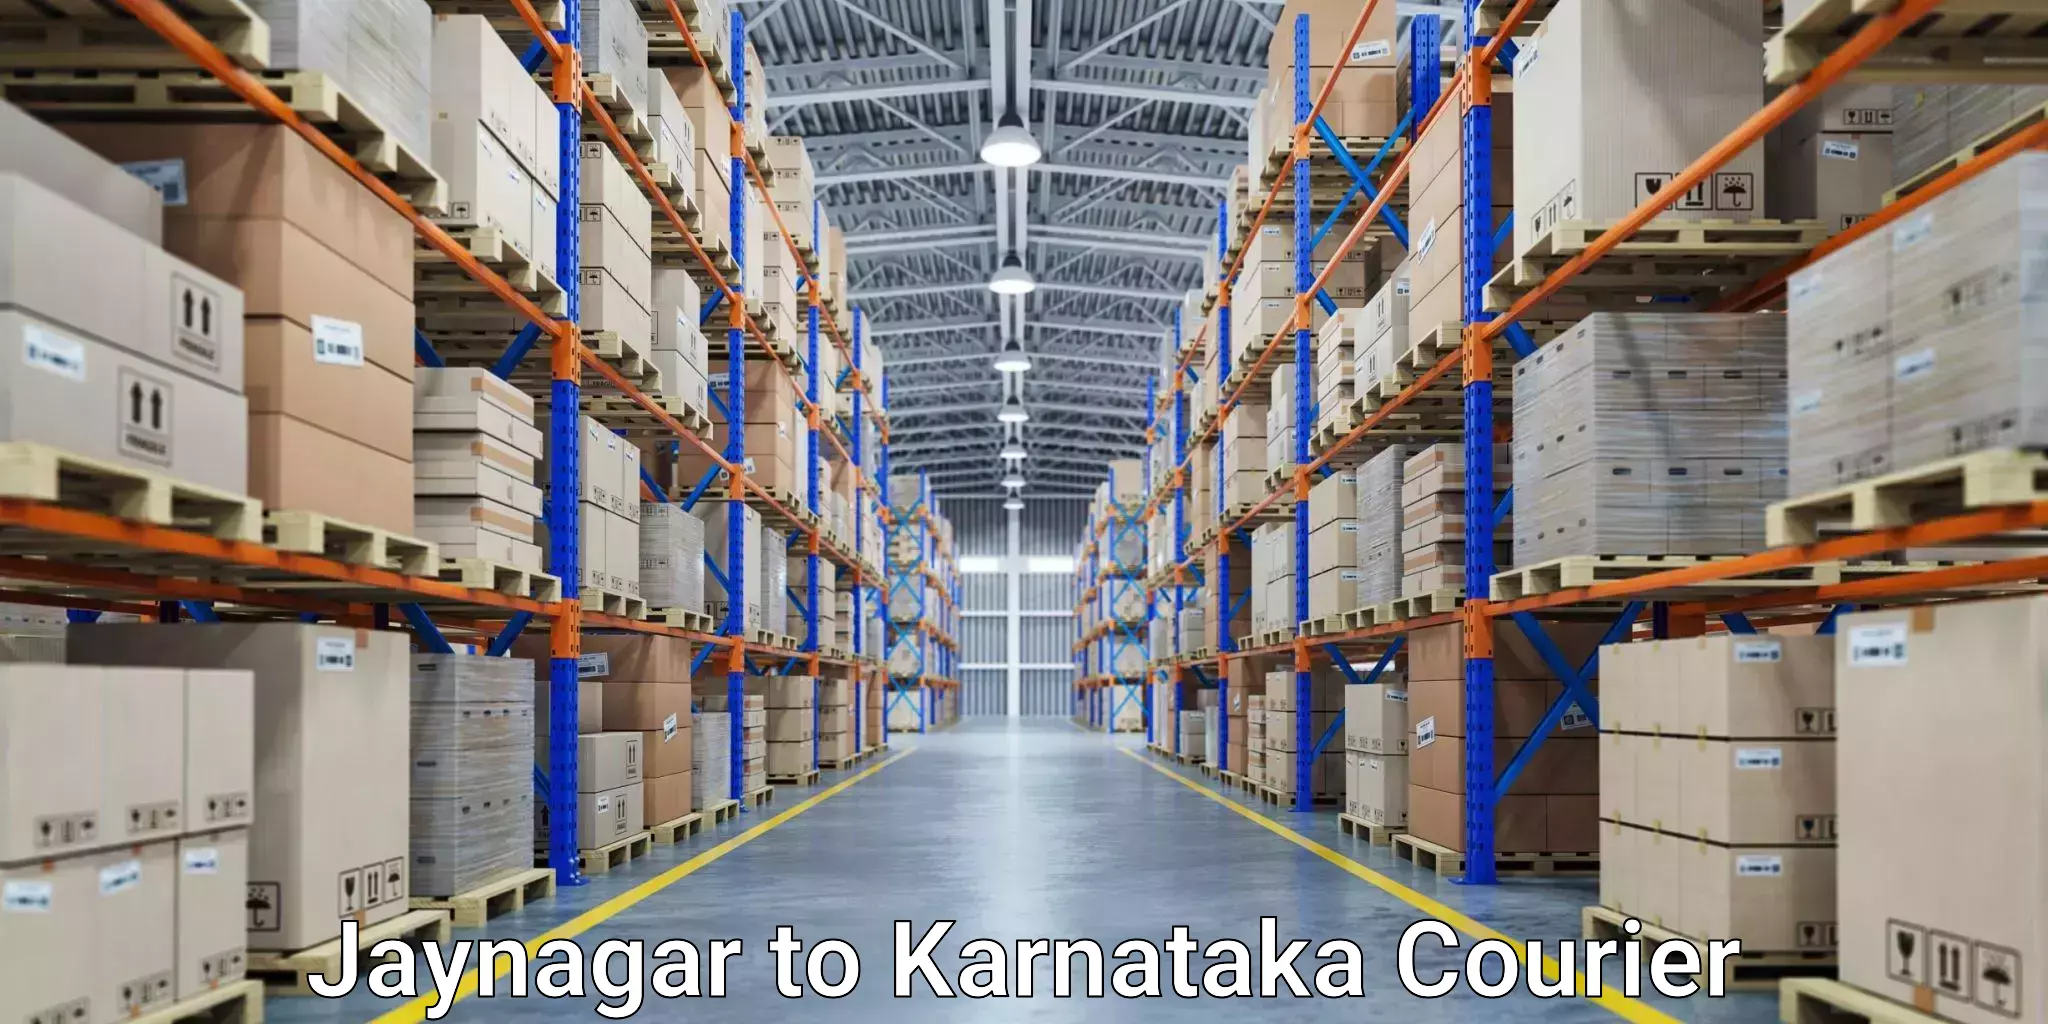 Comprehensive delivery network Jaynagar to Udupi